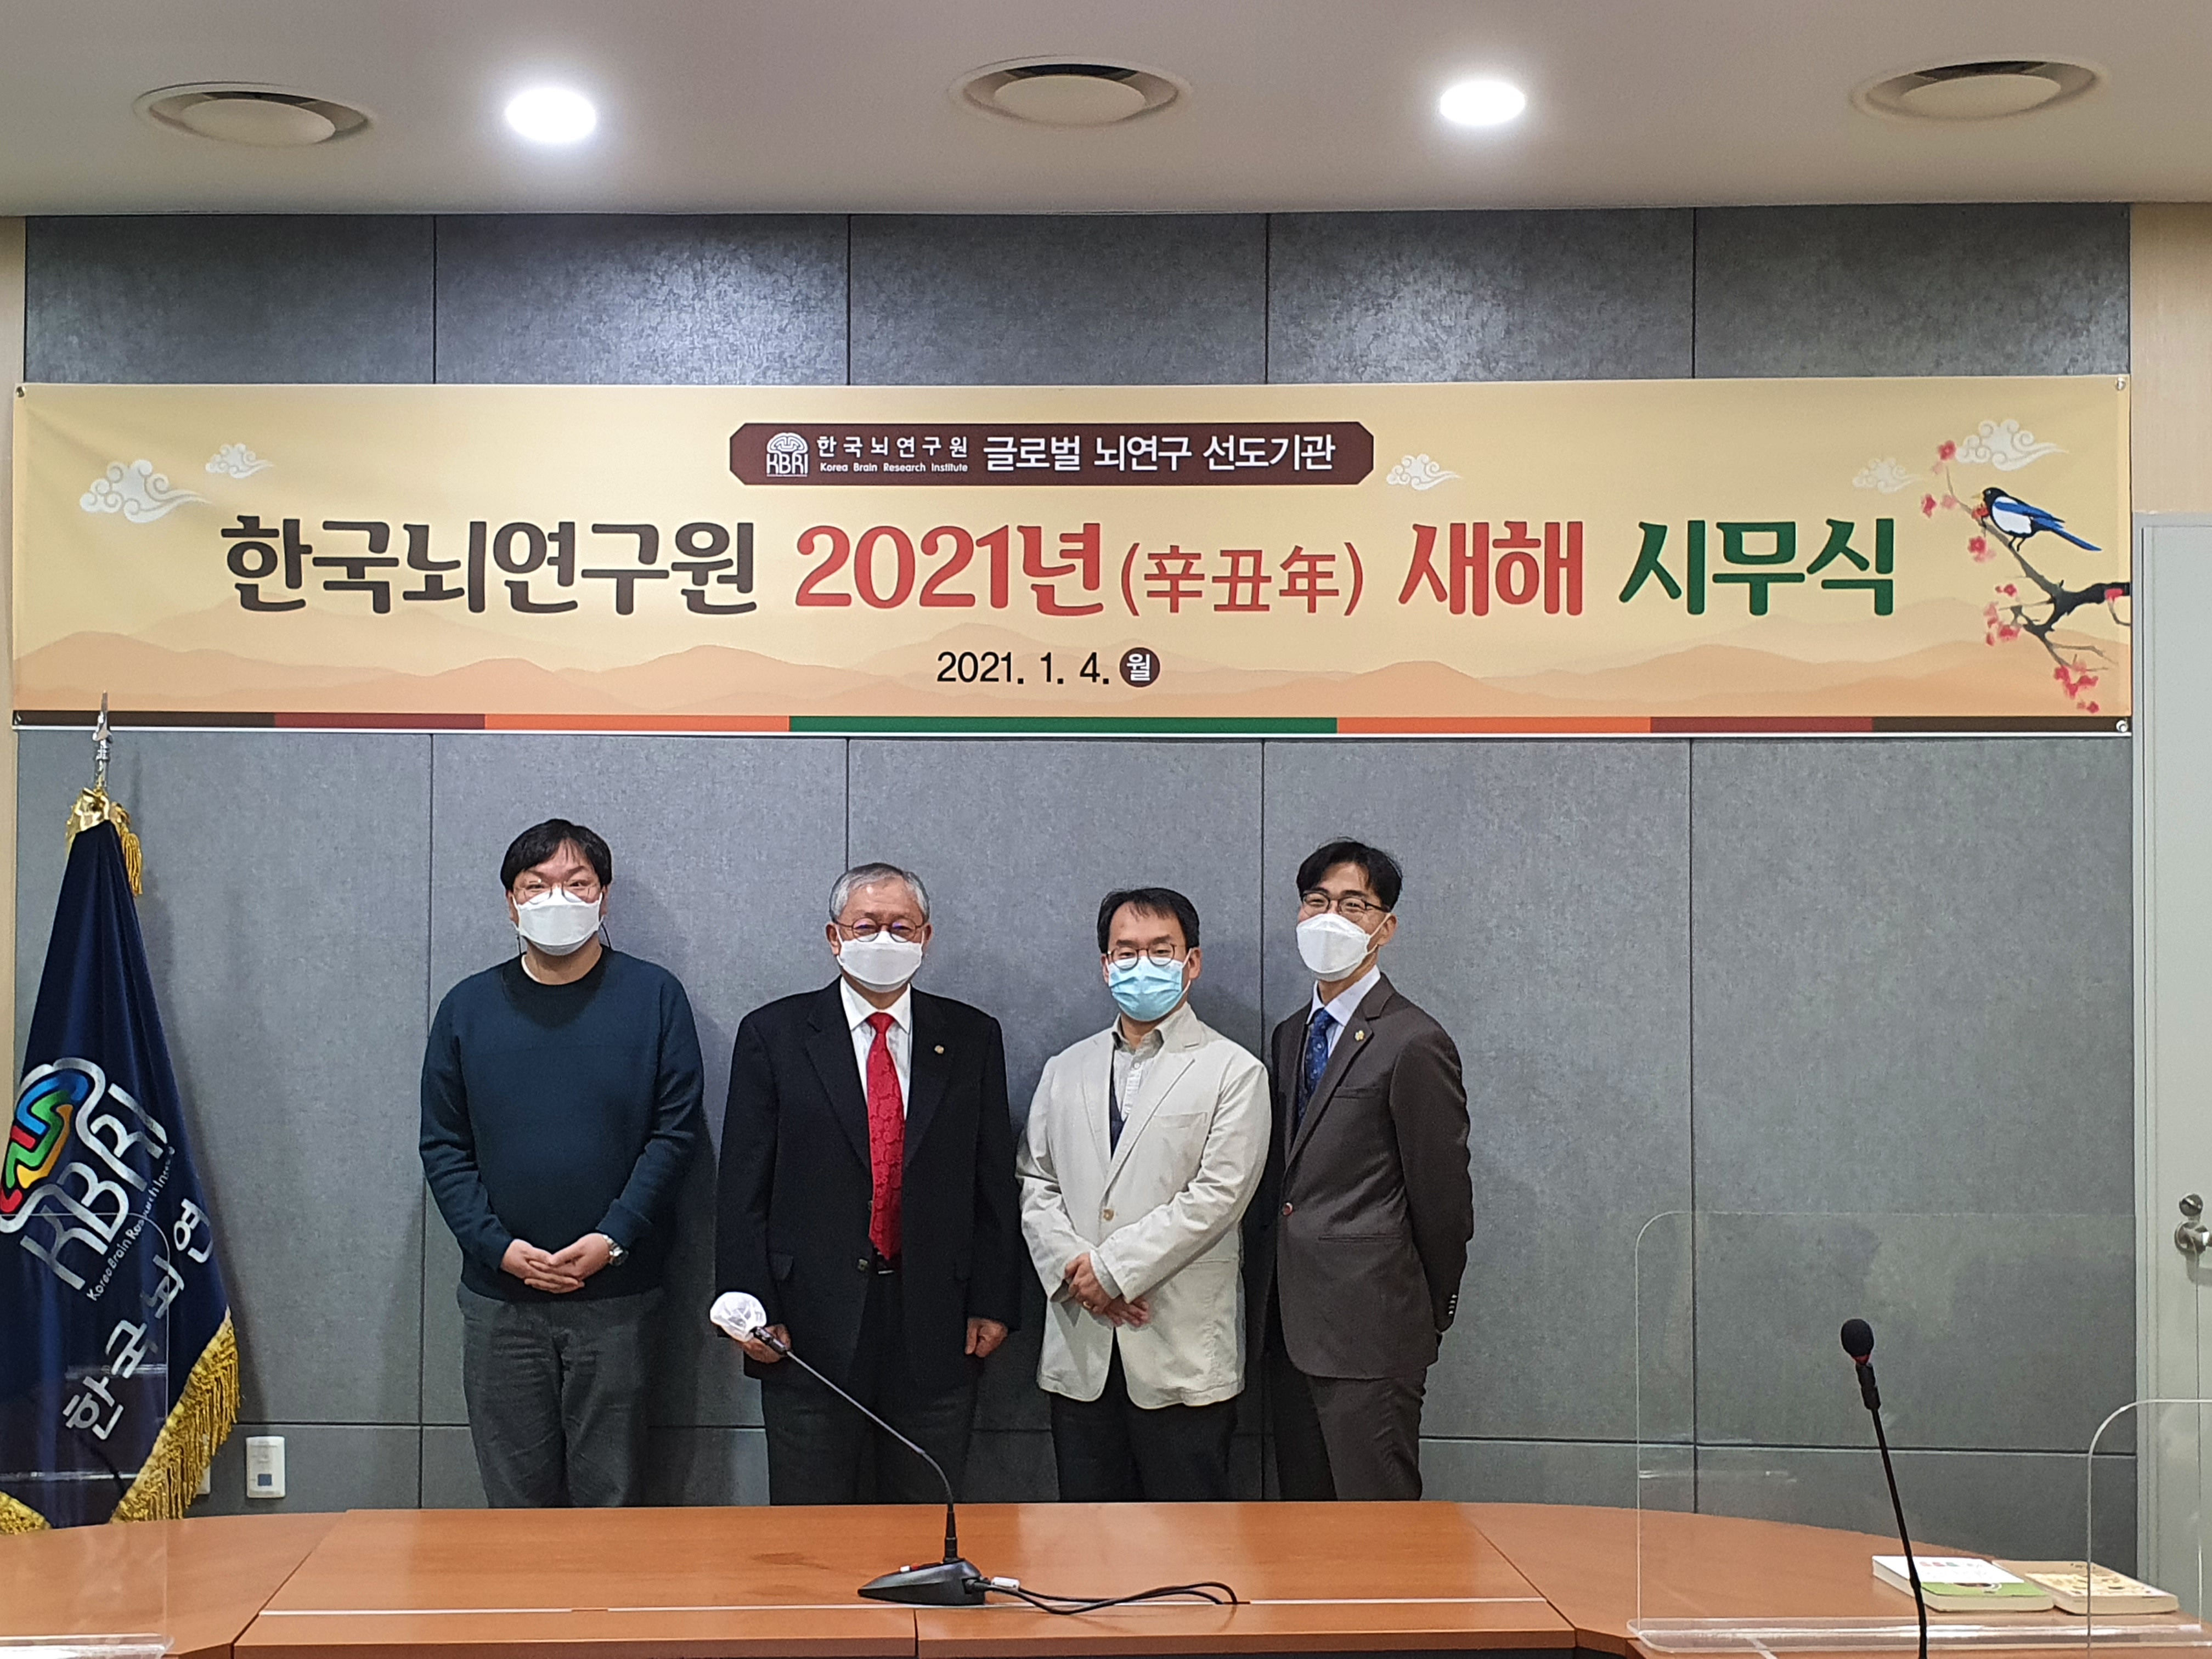 한국뇌연구원, 2021 辛丑年 새해 온라인 시무식 개최